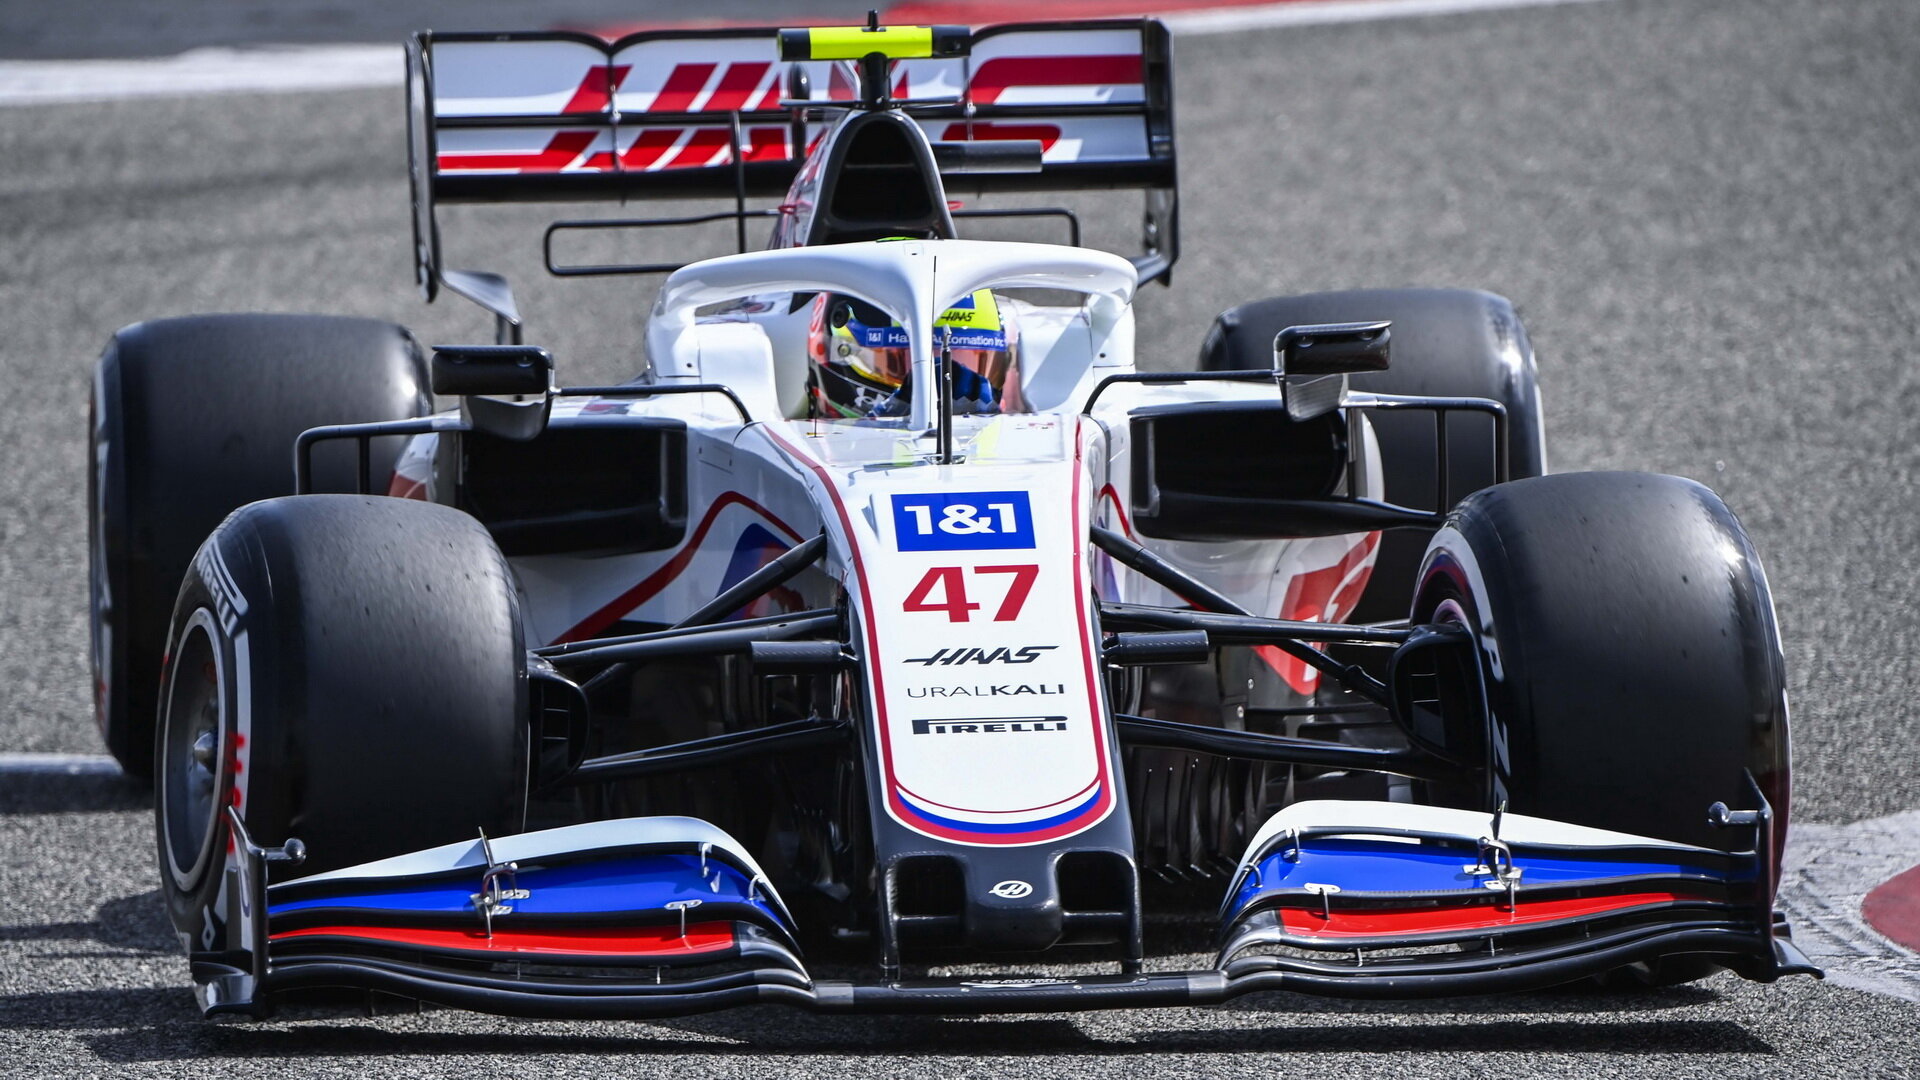 Mick Schumacher - první předsezonní testy v Bahrajnu